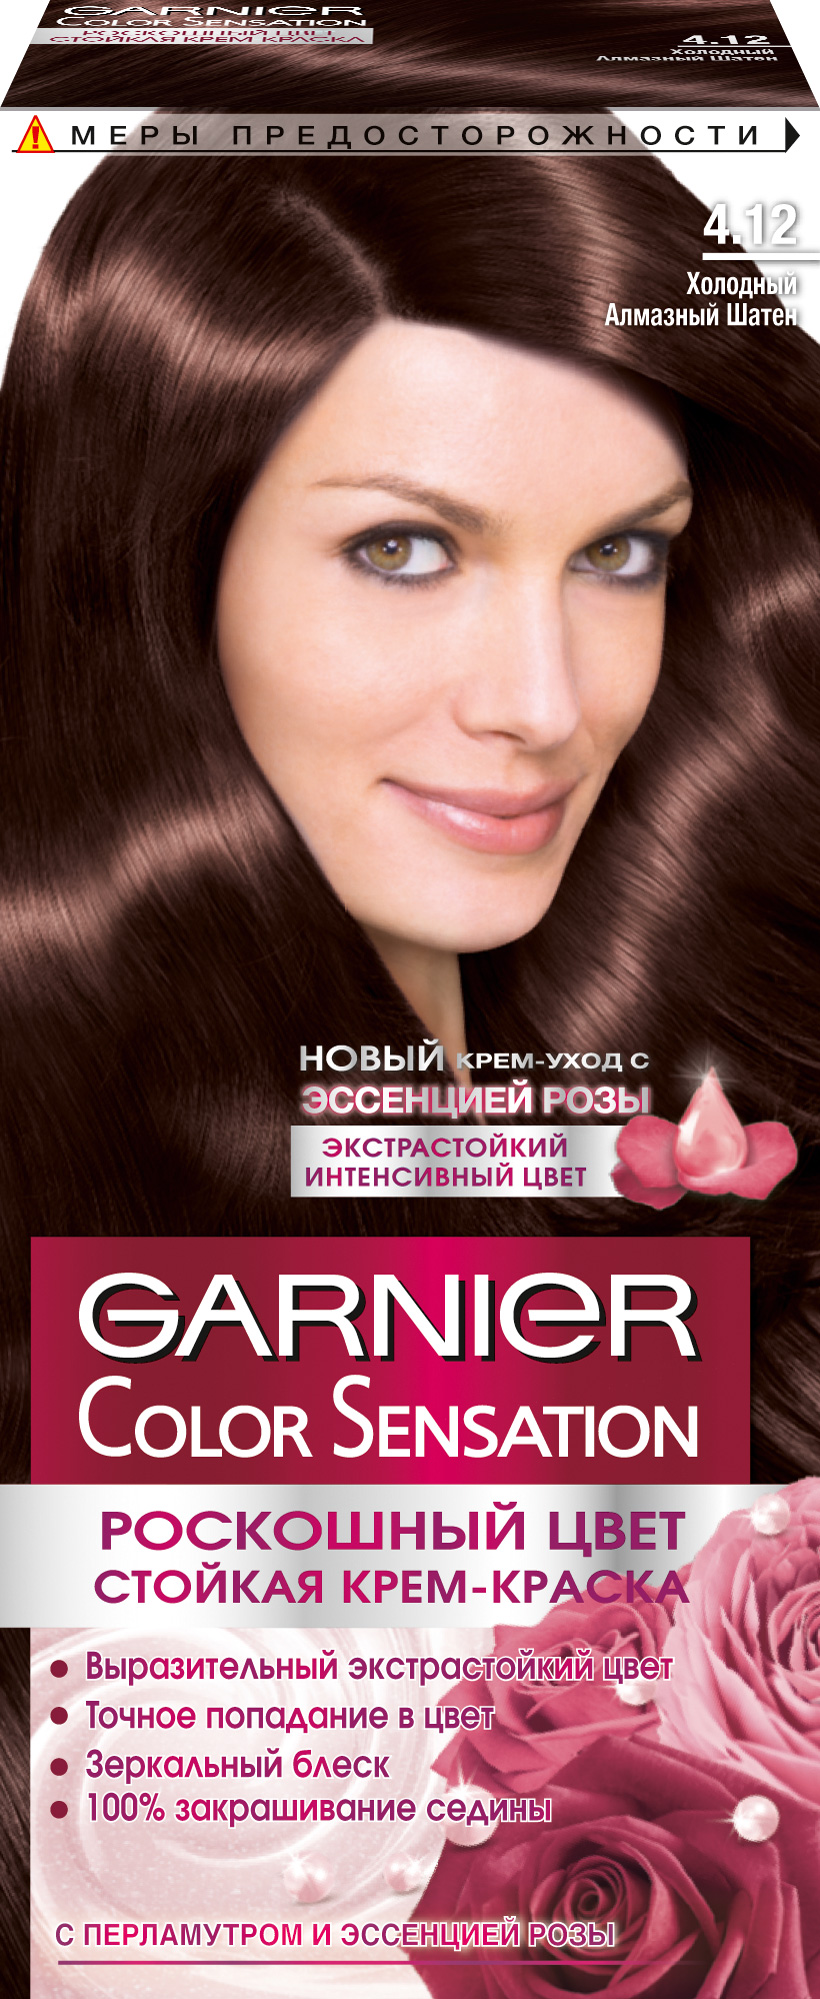 Краска для волос Garnier Color Sensation 4.12 Холодный алмазный шатен garnier дезодорант антиперспирант нео нежность хлопка сухой крем защита 48 часов невидимый женский